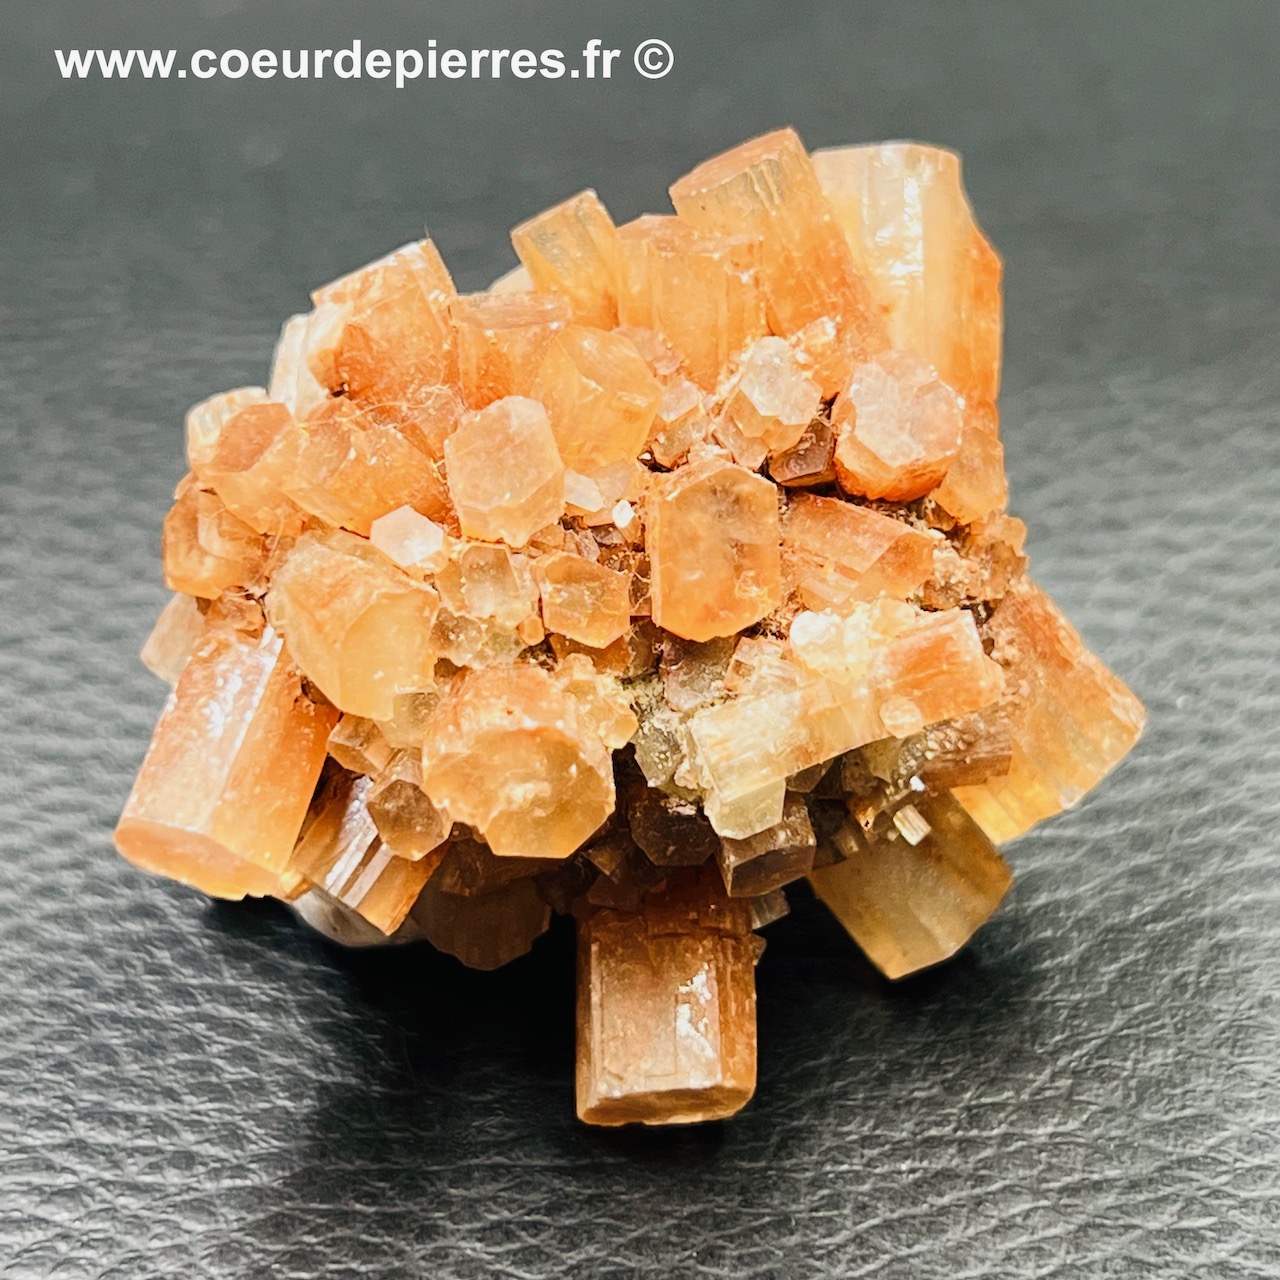 Aragonite macle de cristaux du Maroc (réf ago3)